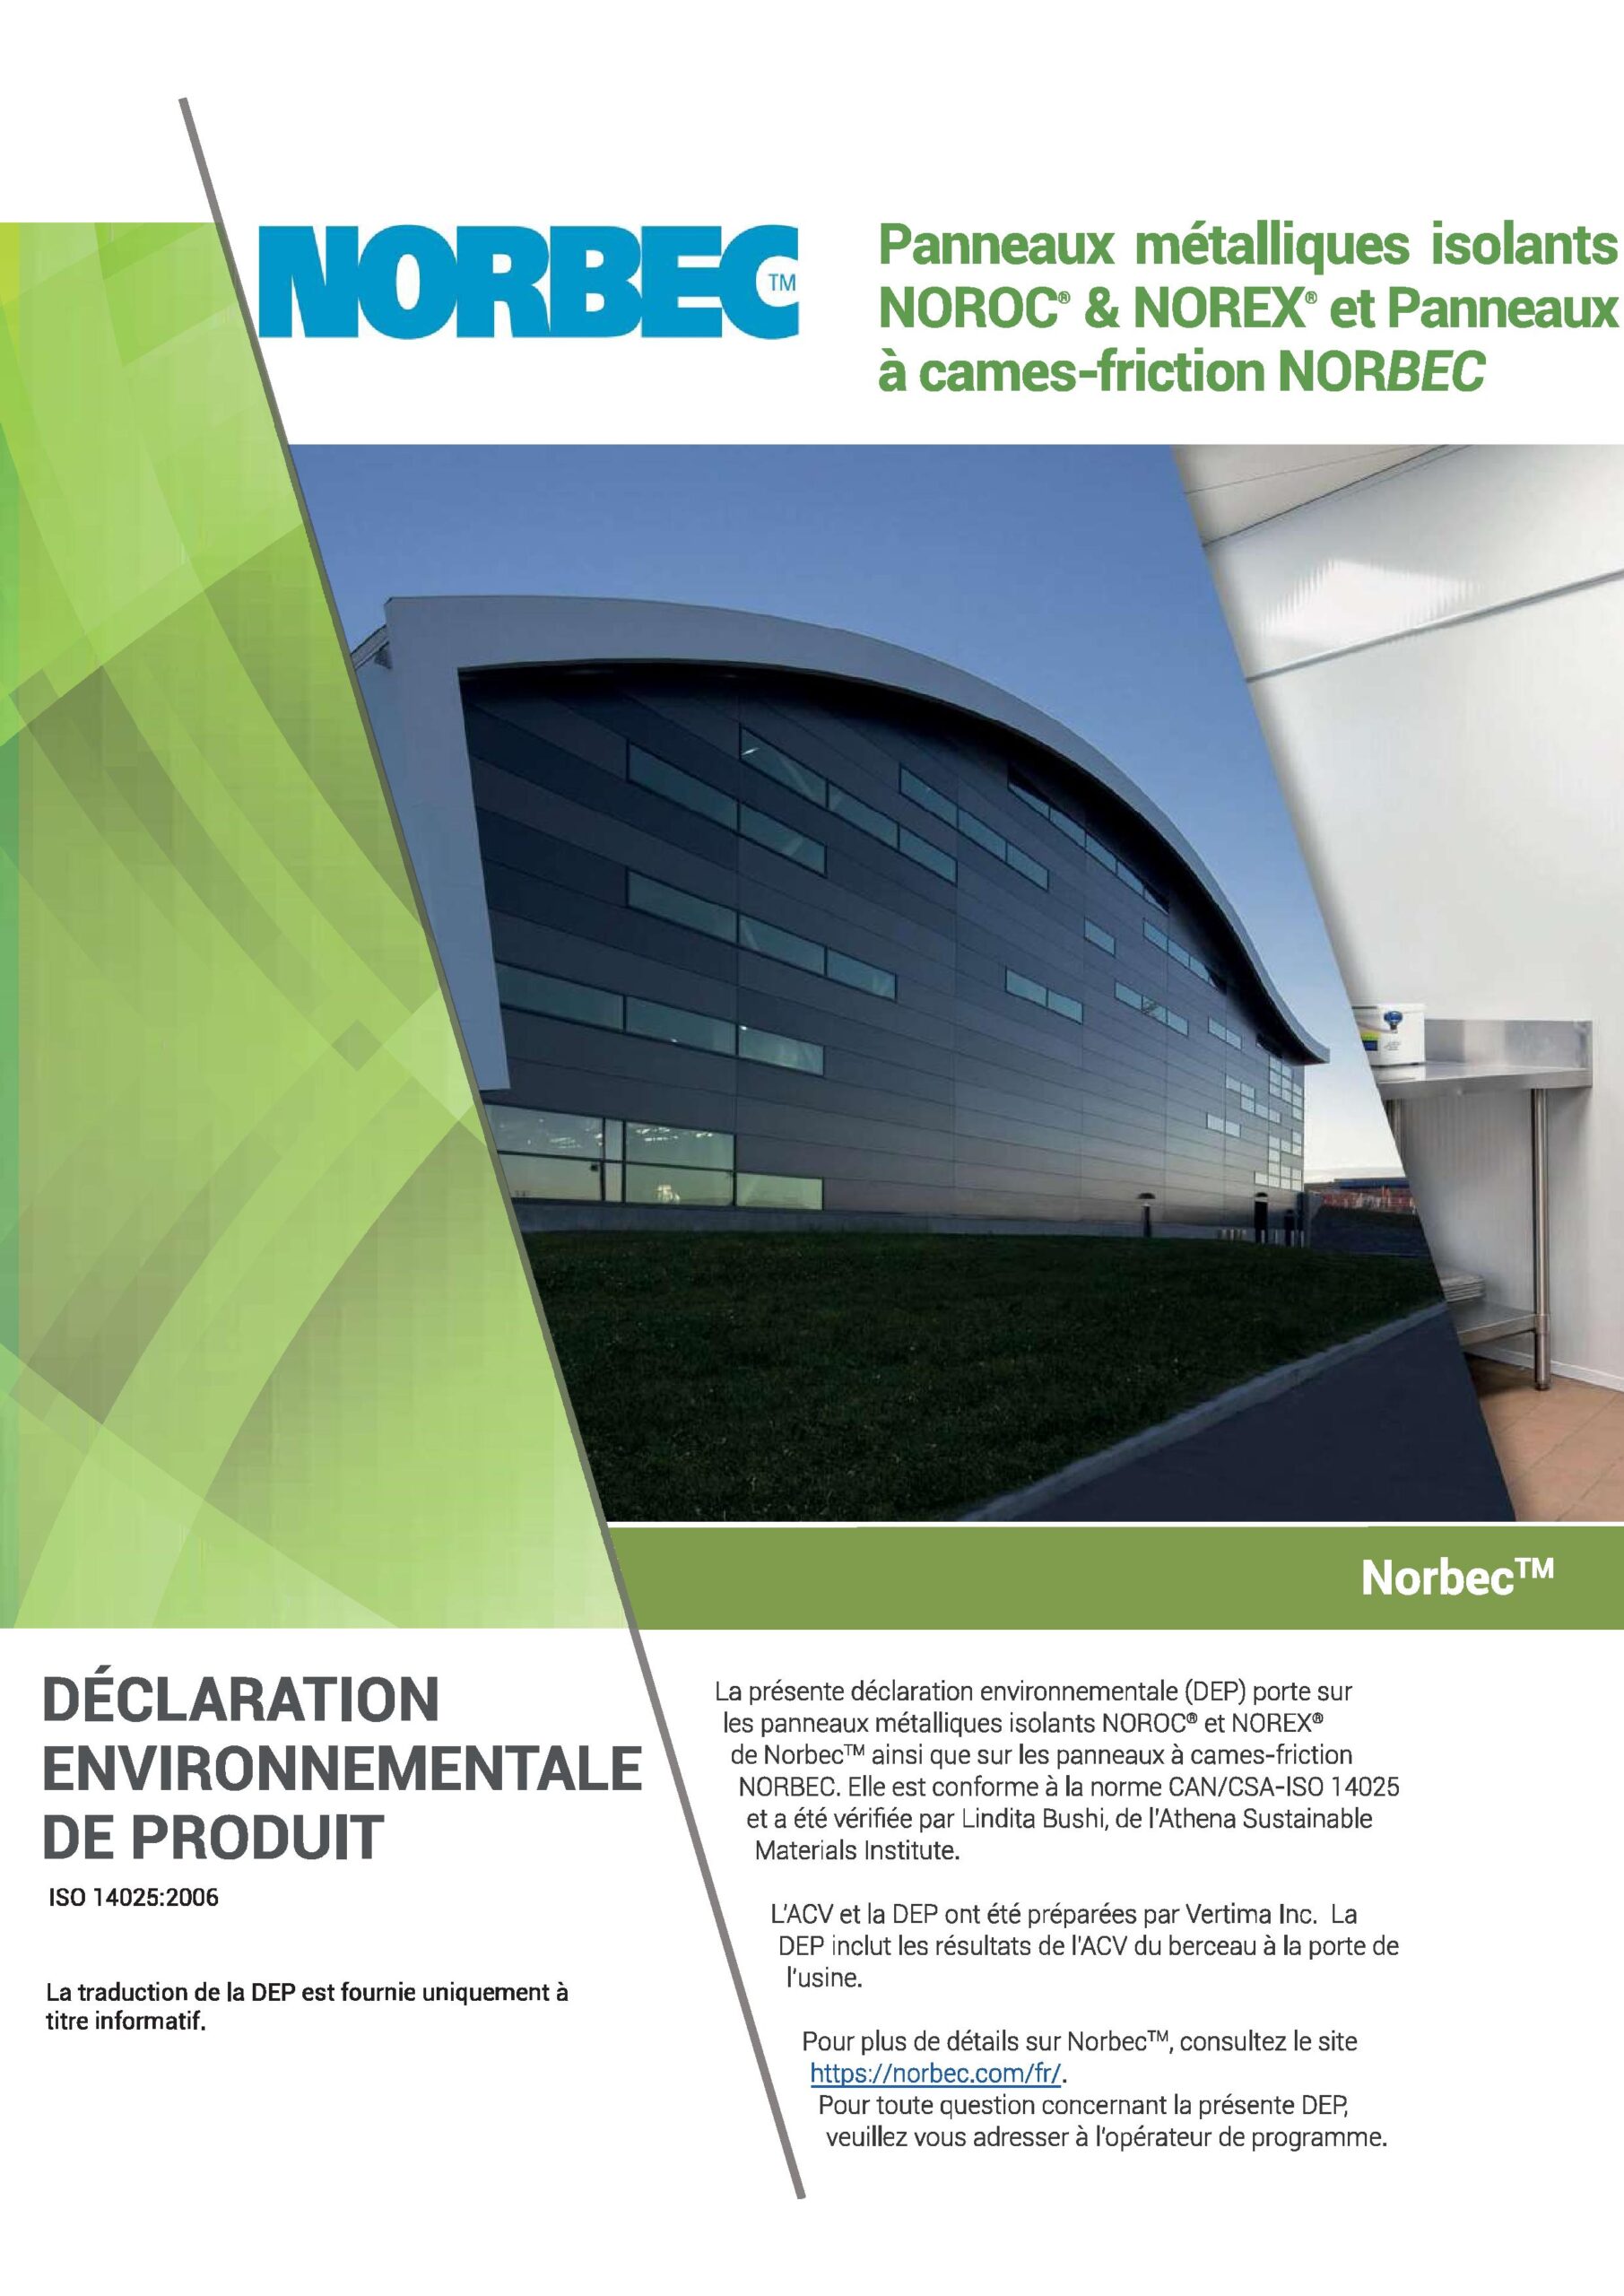 Document à propos de la déclaration environnementale des produits chez Norbec